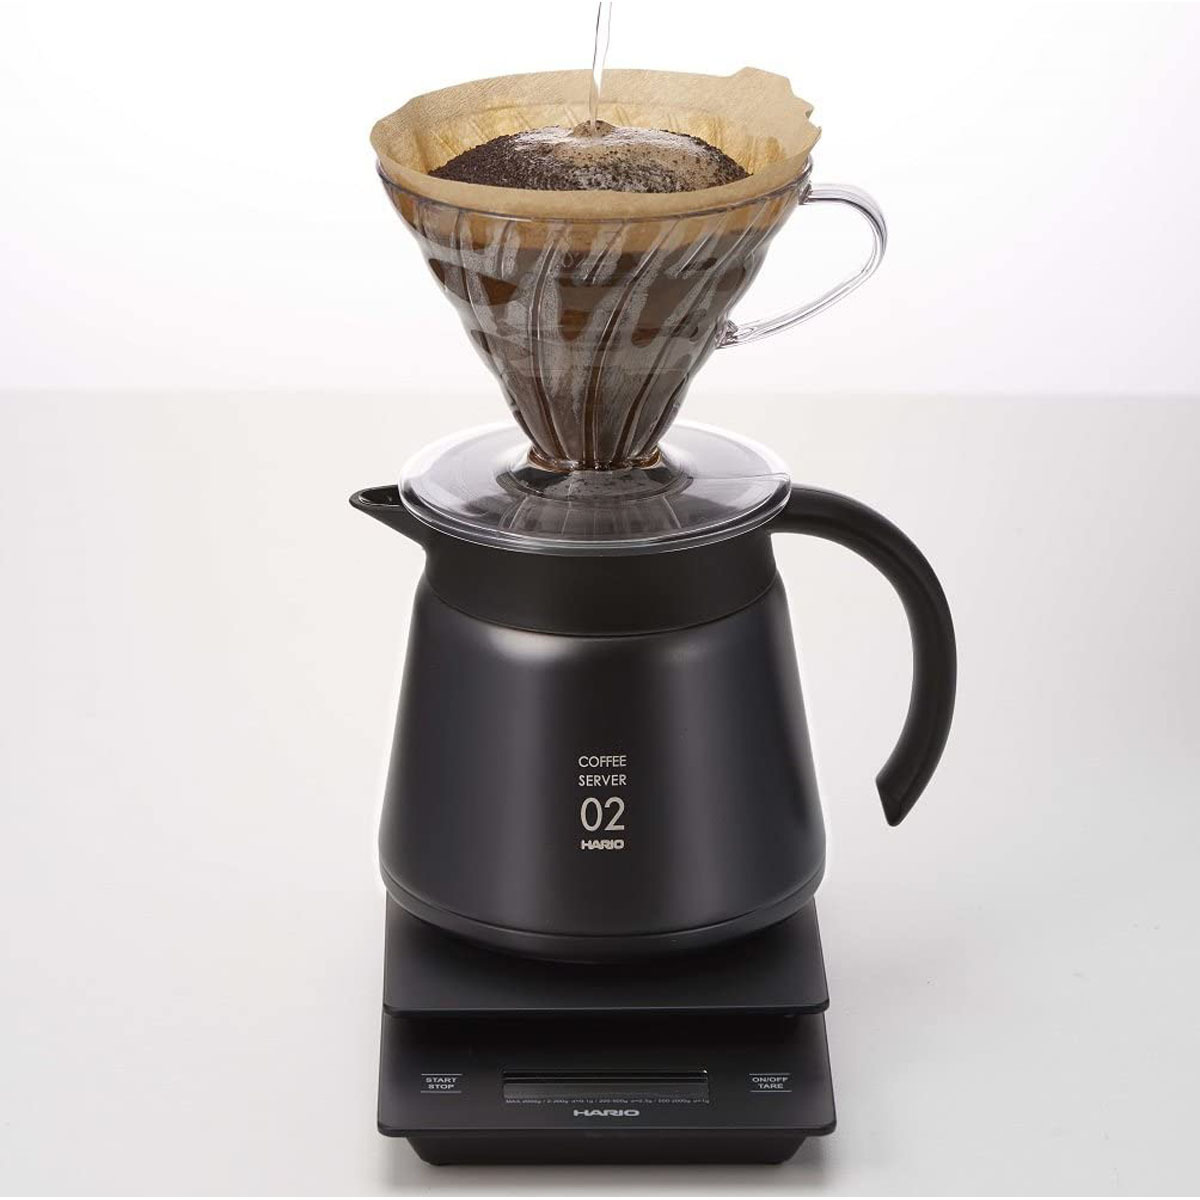 保温ステンレスサーバー コーヒーサーバー おいしいコーヒーを長く楽しめる 550ml 真空断熱二重構造 熱湯可 シンプル ブラック